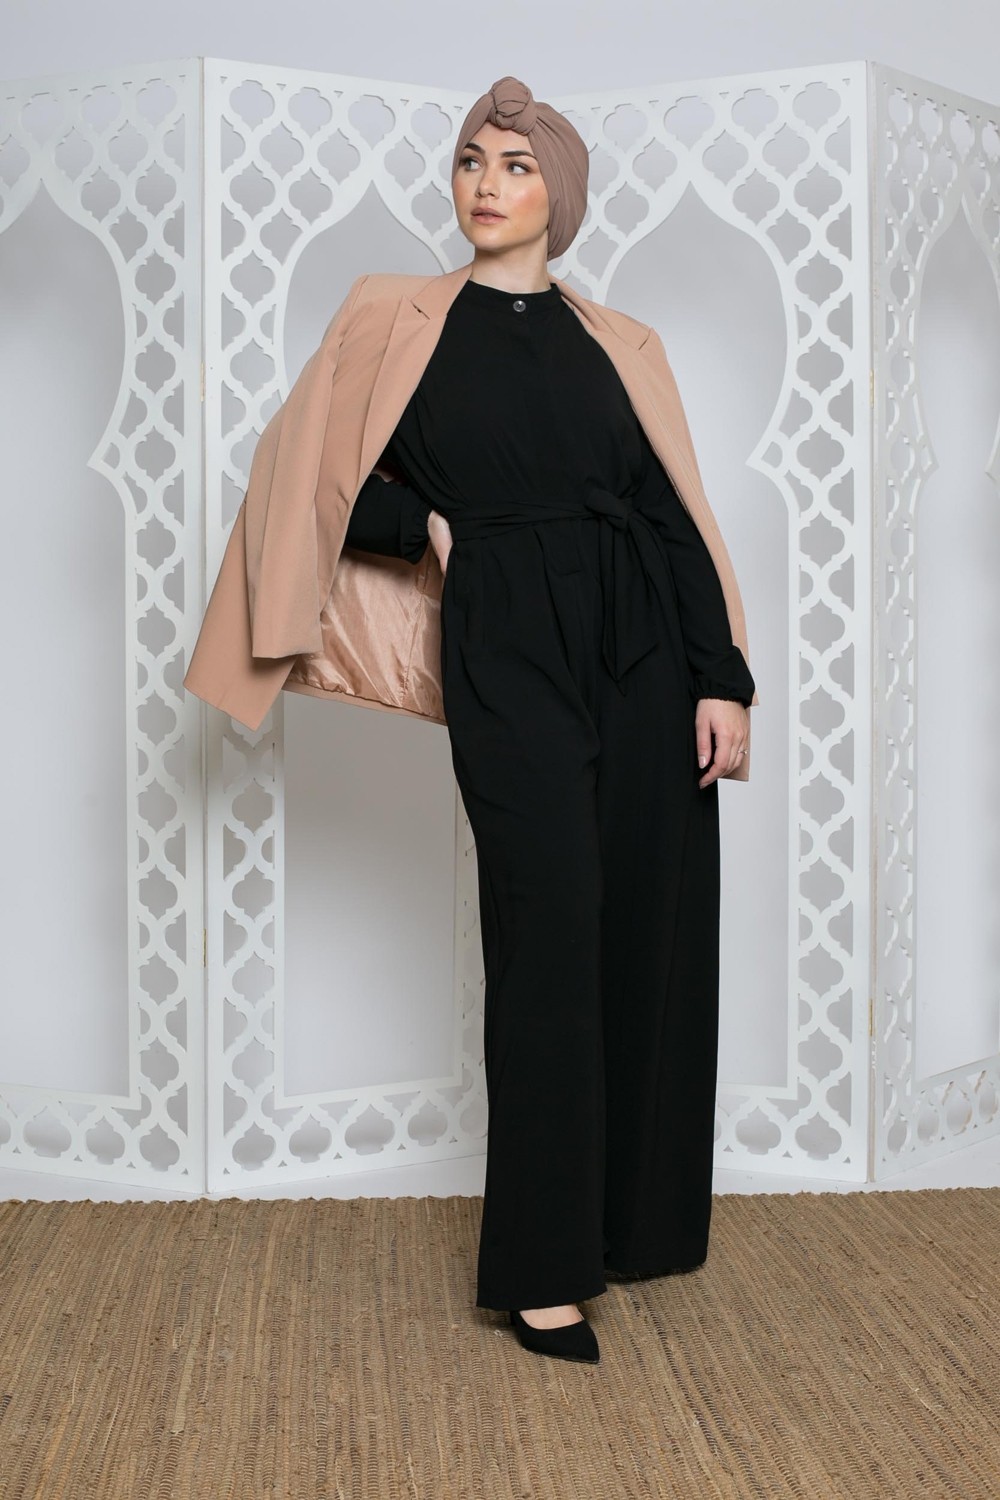 Combinaison soie de médine noir création pour femme musulmane boutique hijab